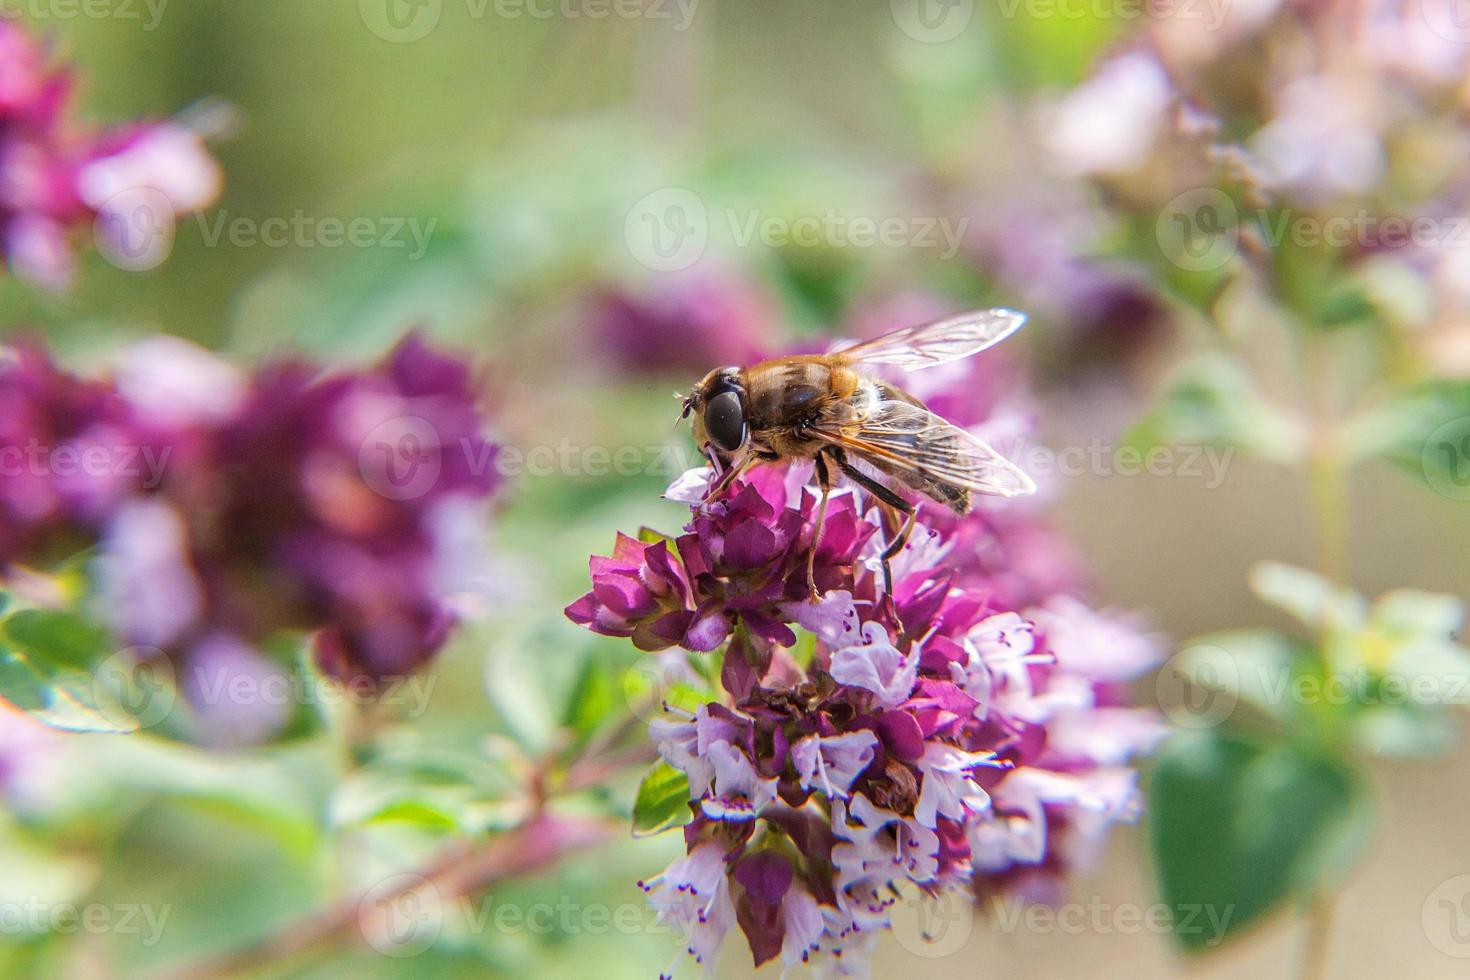 l'ape mellifera ricoperta di polline giallo beve il nettare, fiore rosa impollinatore. ispirazione floreale naturale primaverile o estivo in fiore giardino o parco sfondo. vita degli insetti. macro da vicino. foto